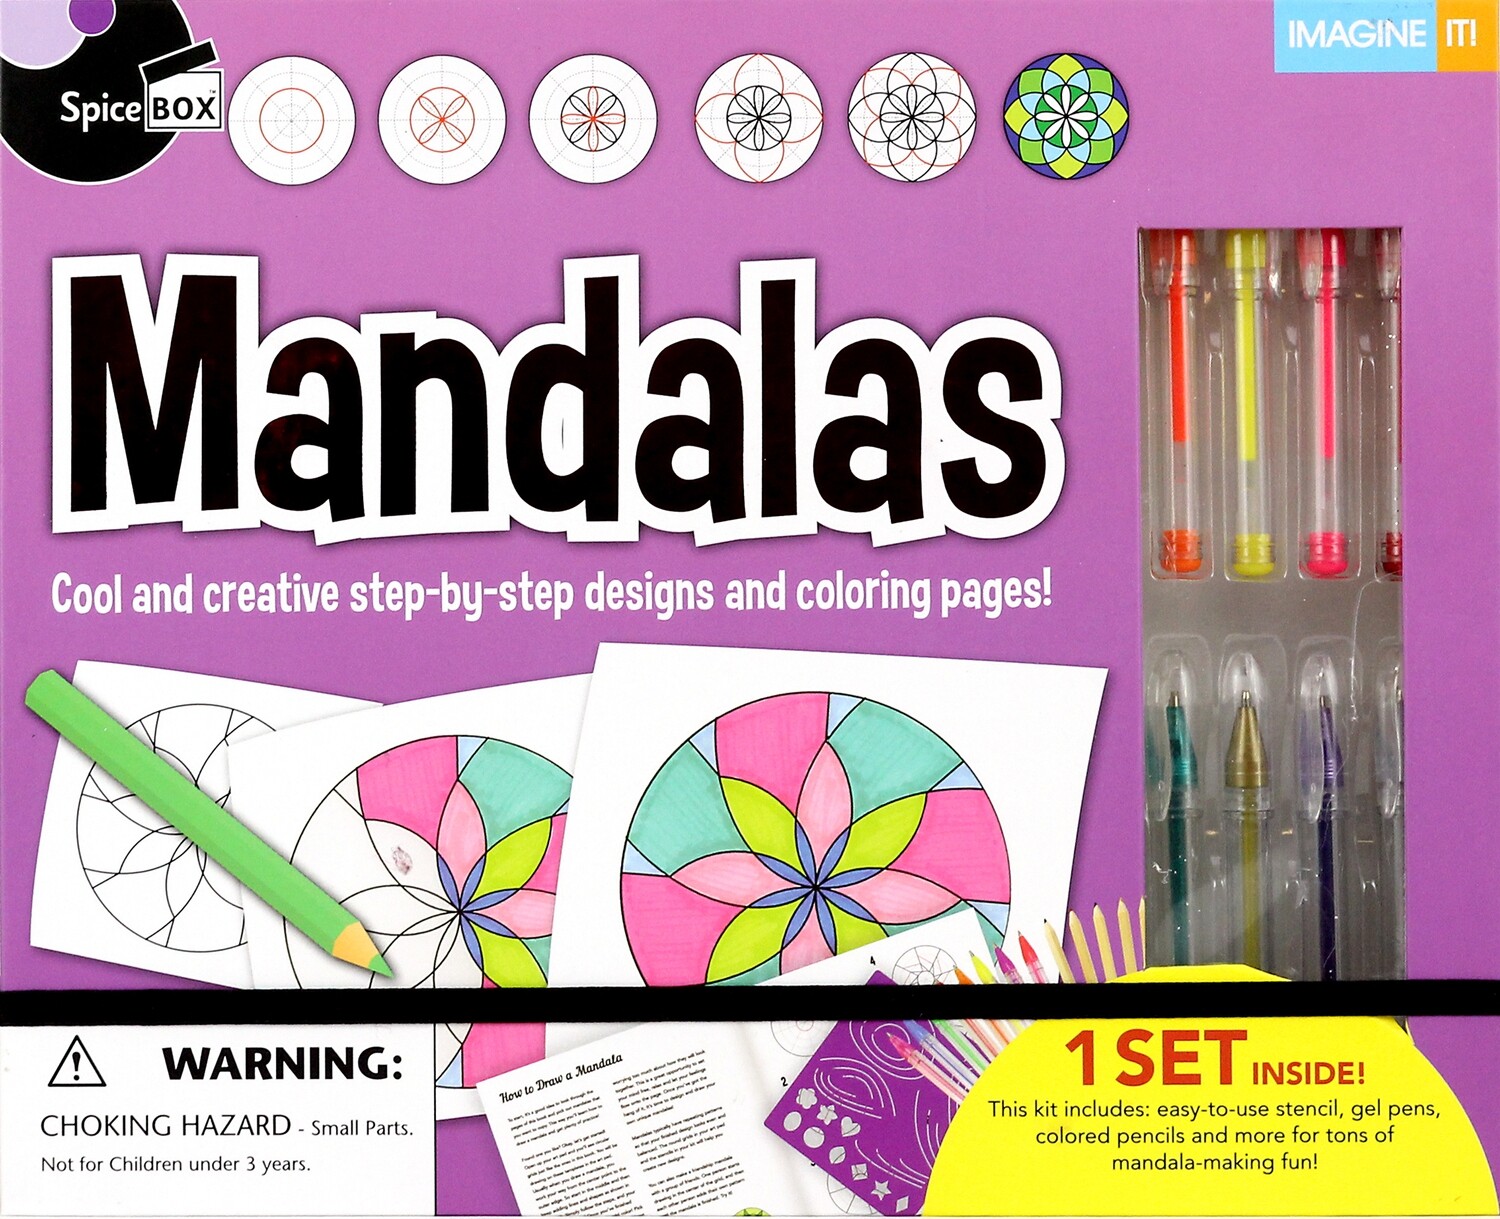 Book Kit: Imagine It 2.0 Mandalas